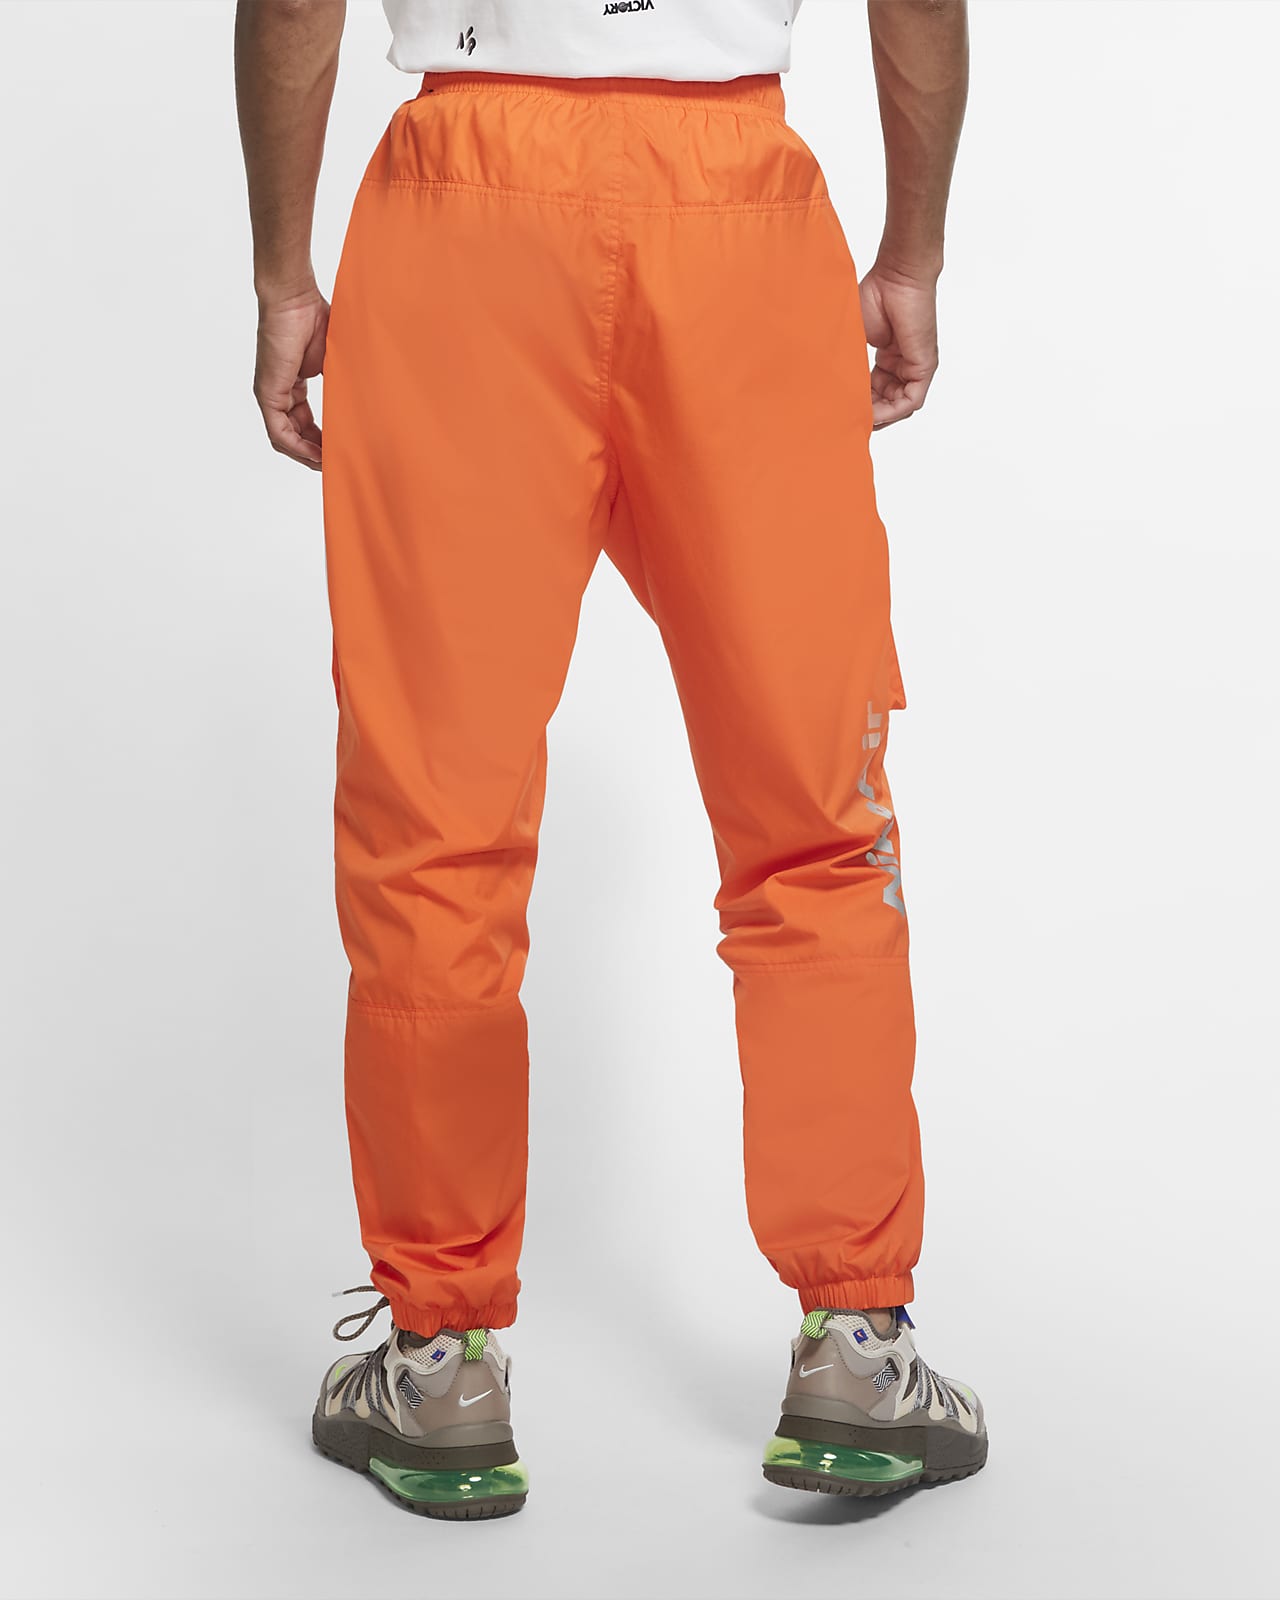 Pantalones de tejido Woven para hombre Nike Air. Nike.com